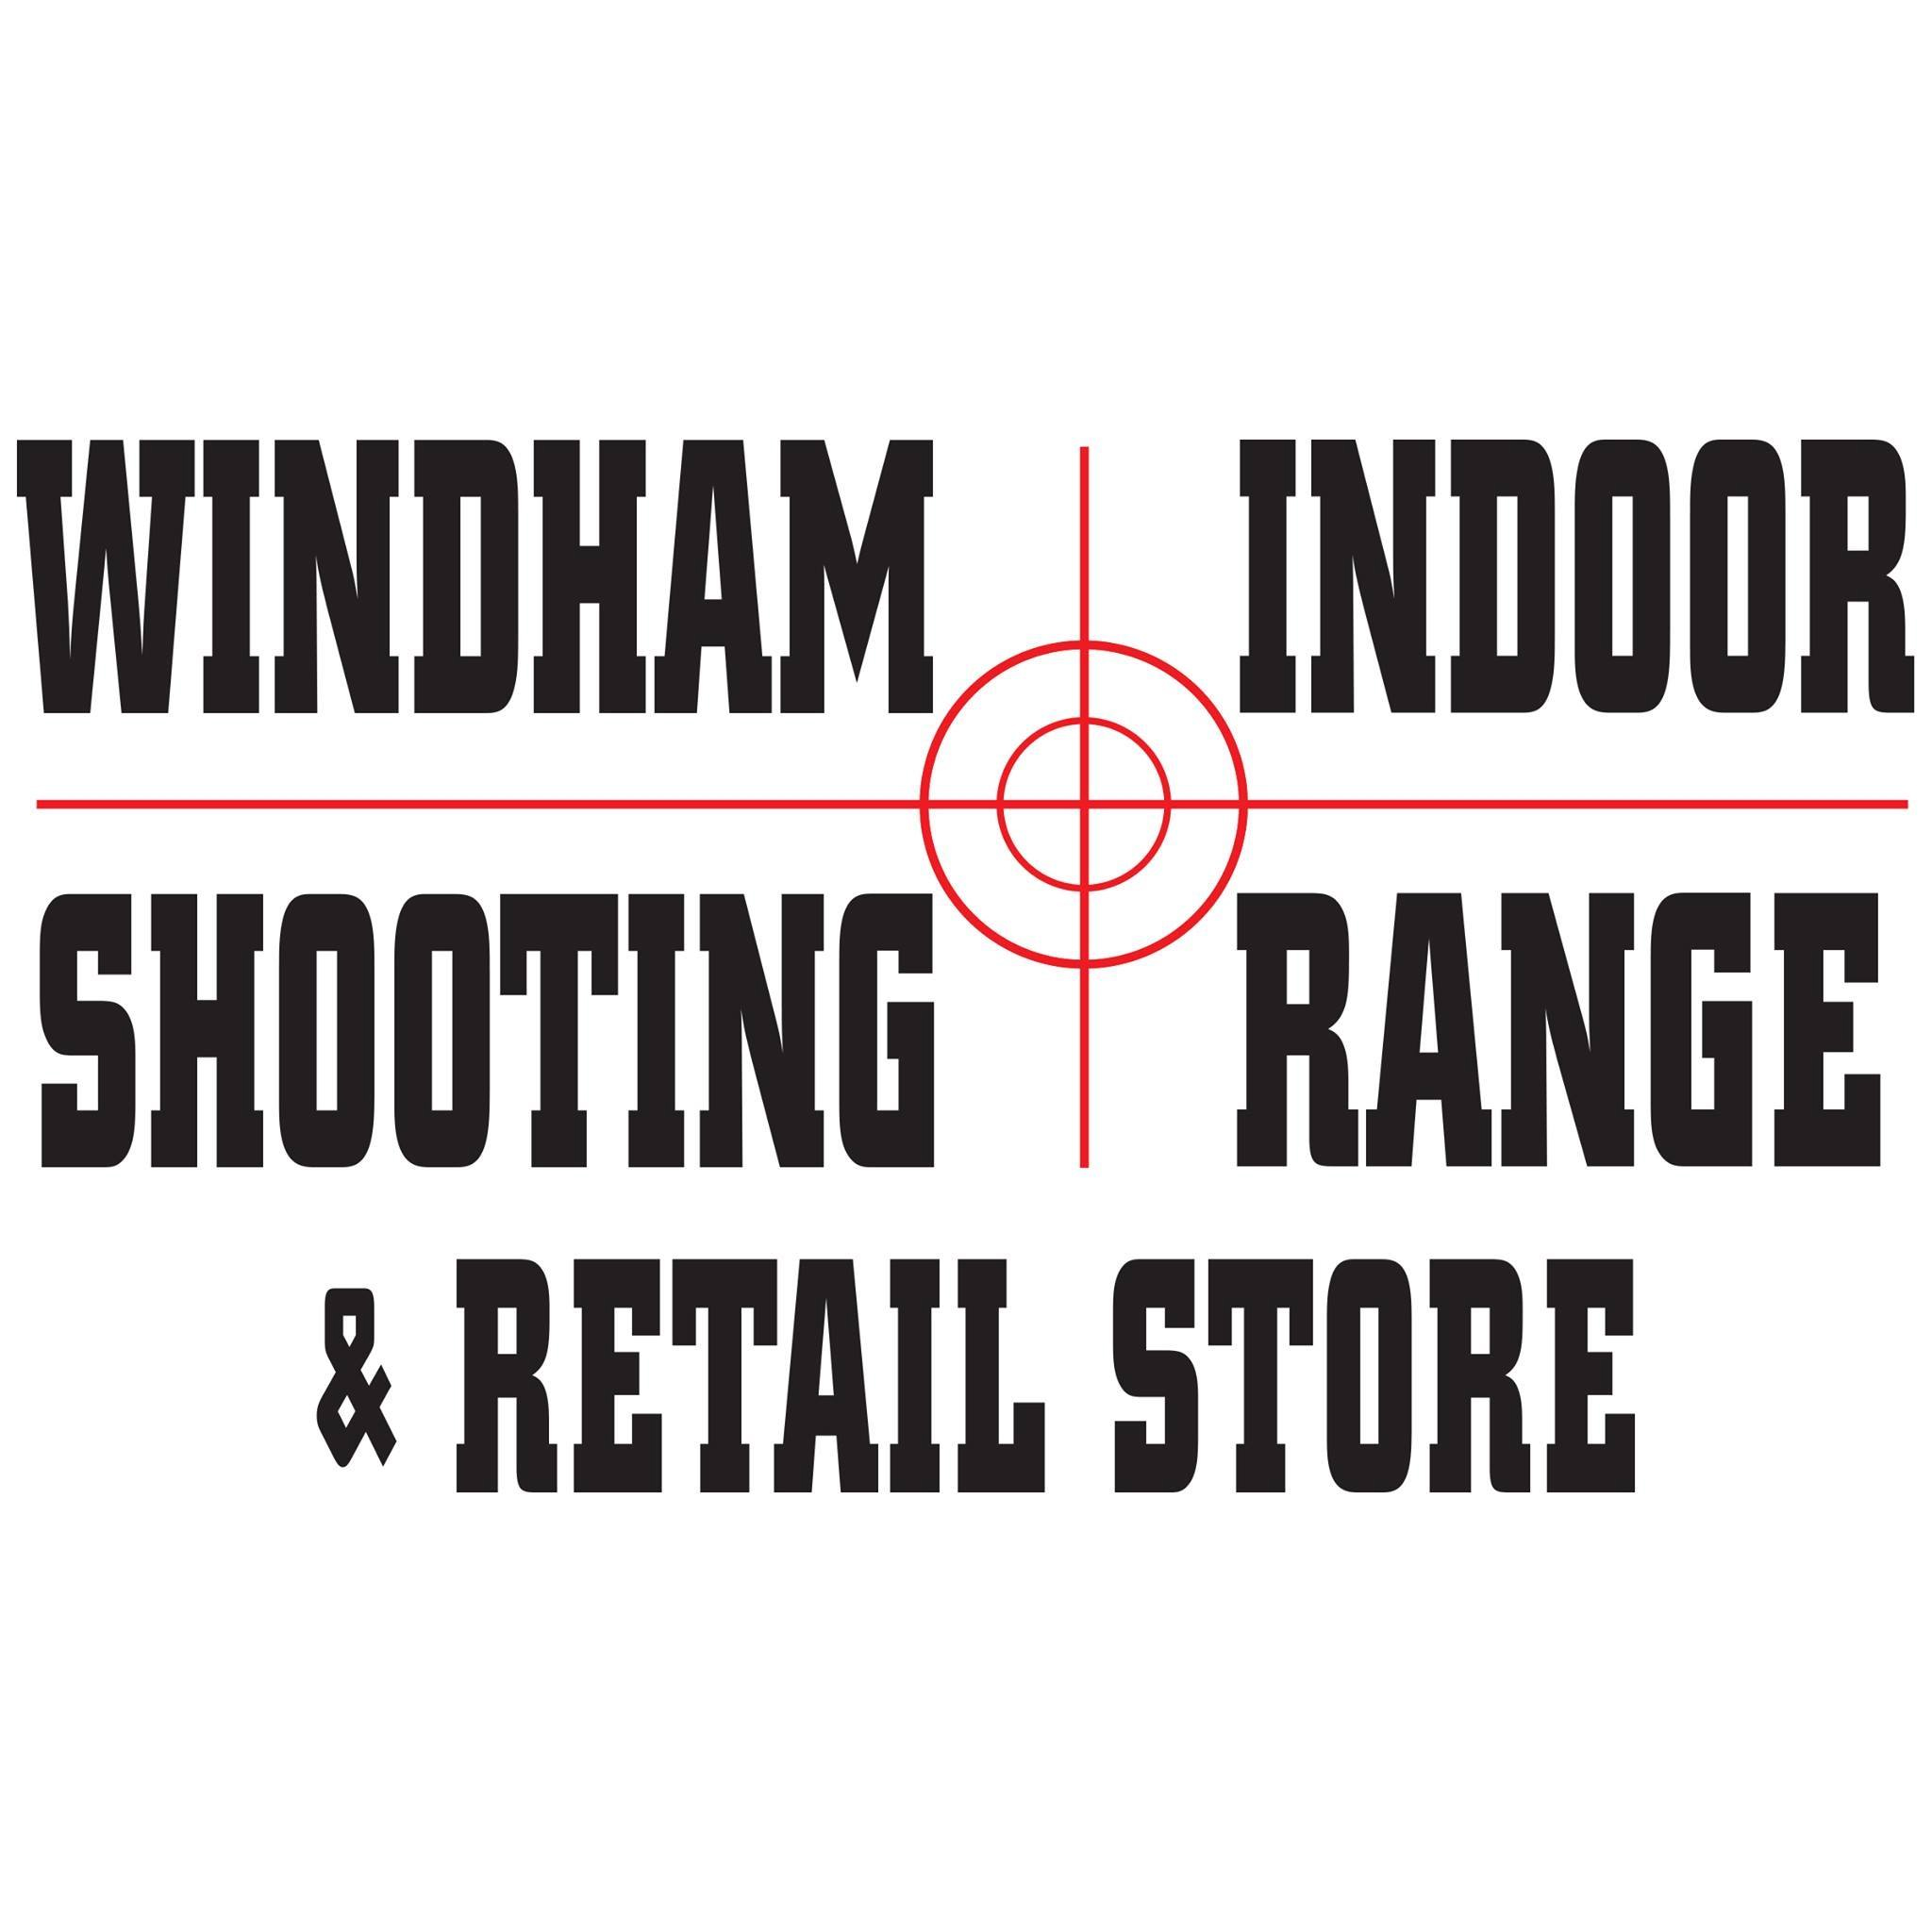 Windham Indoor Shooting Range